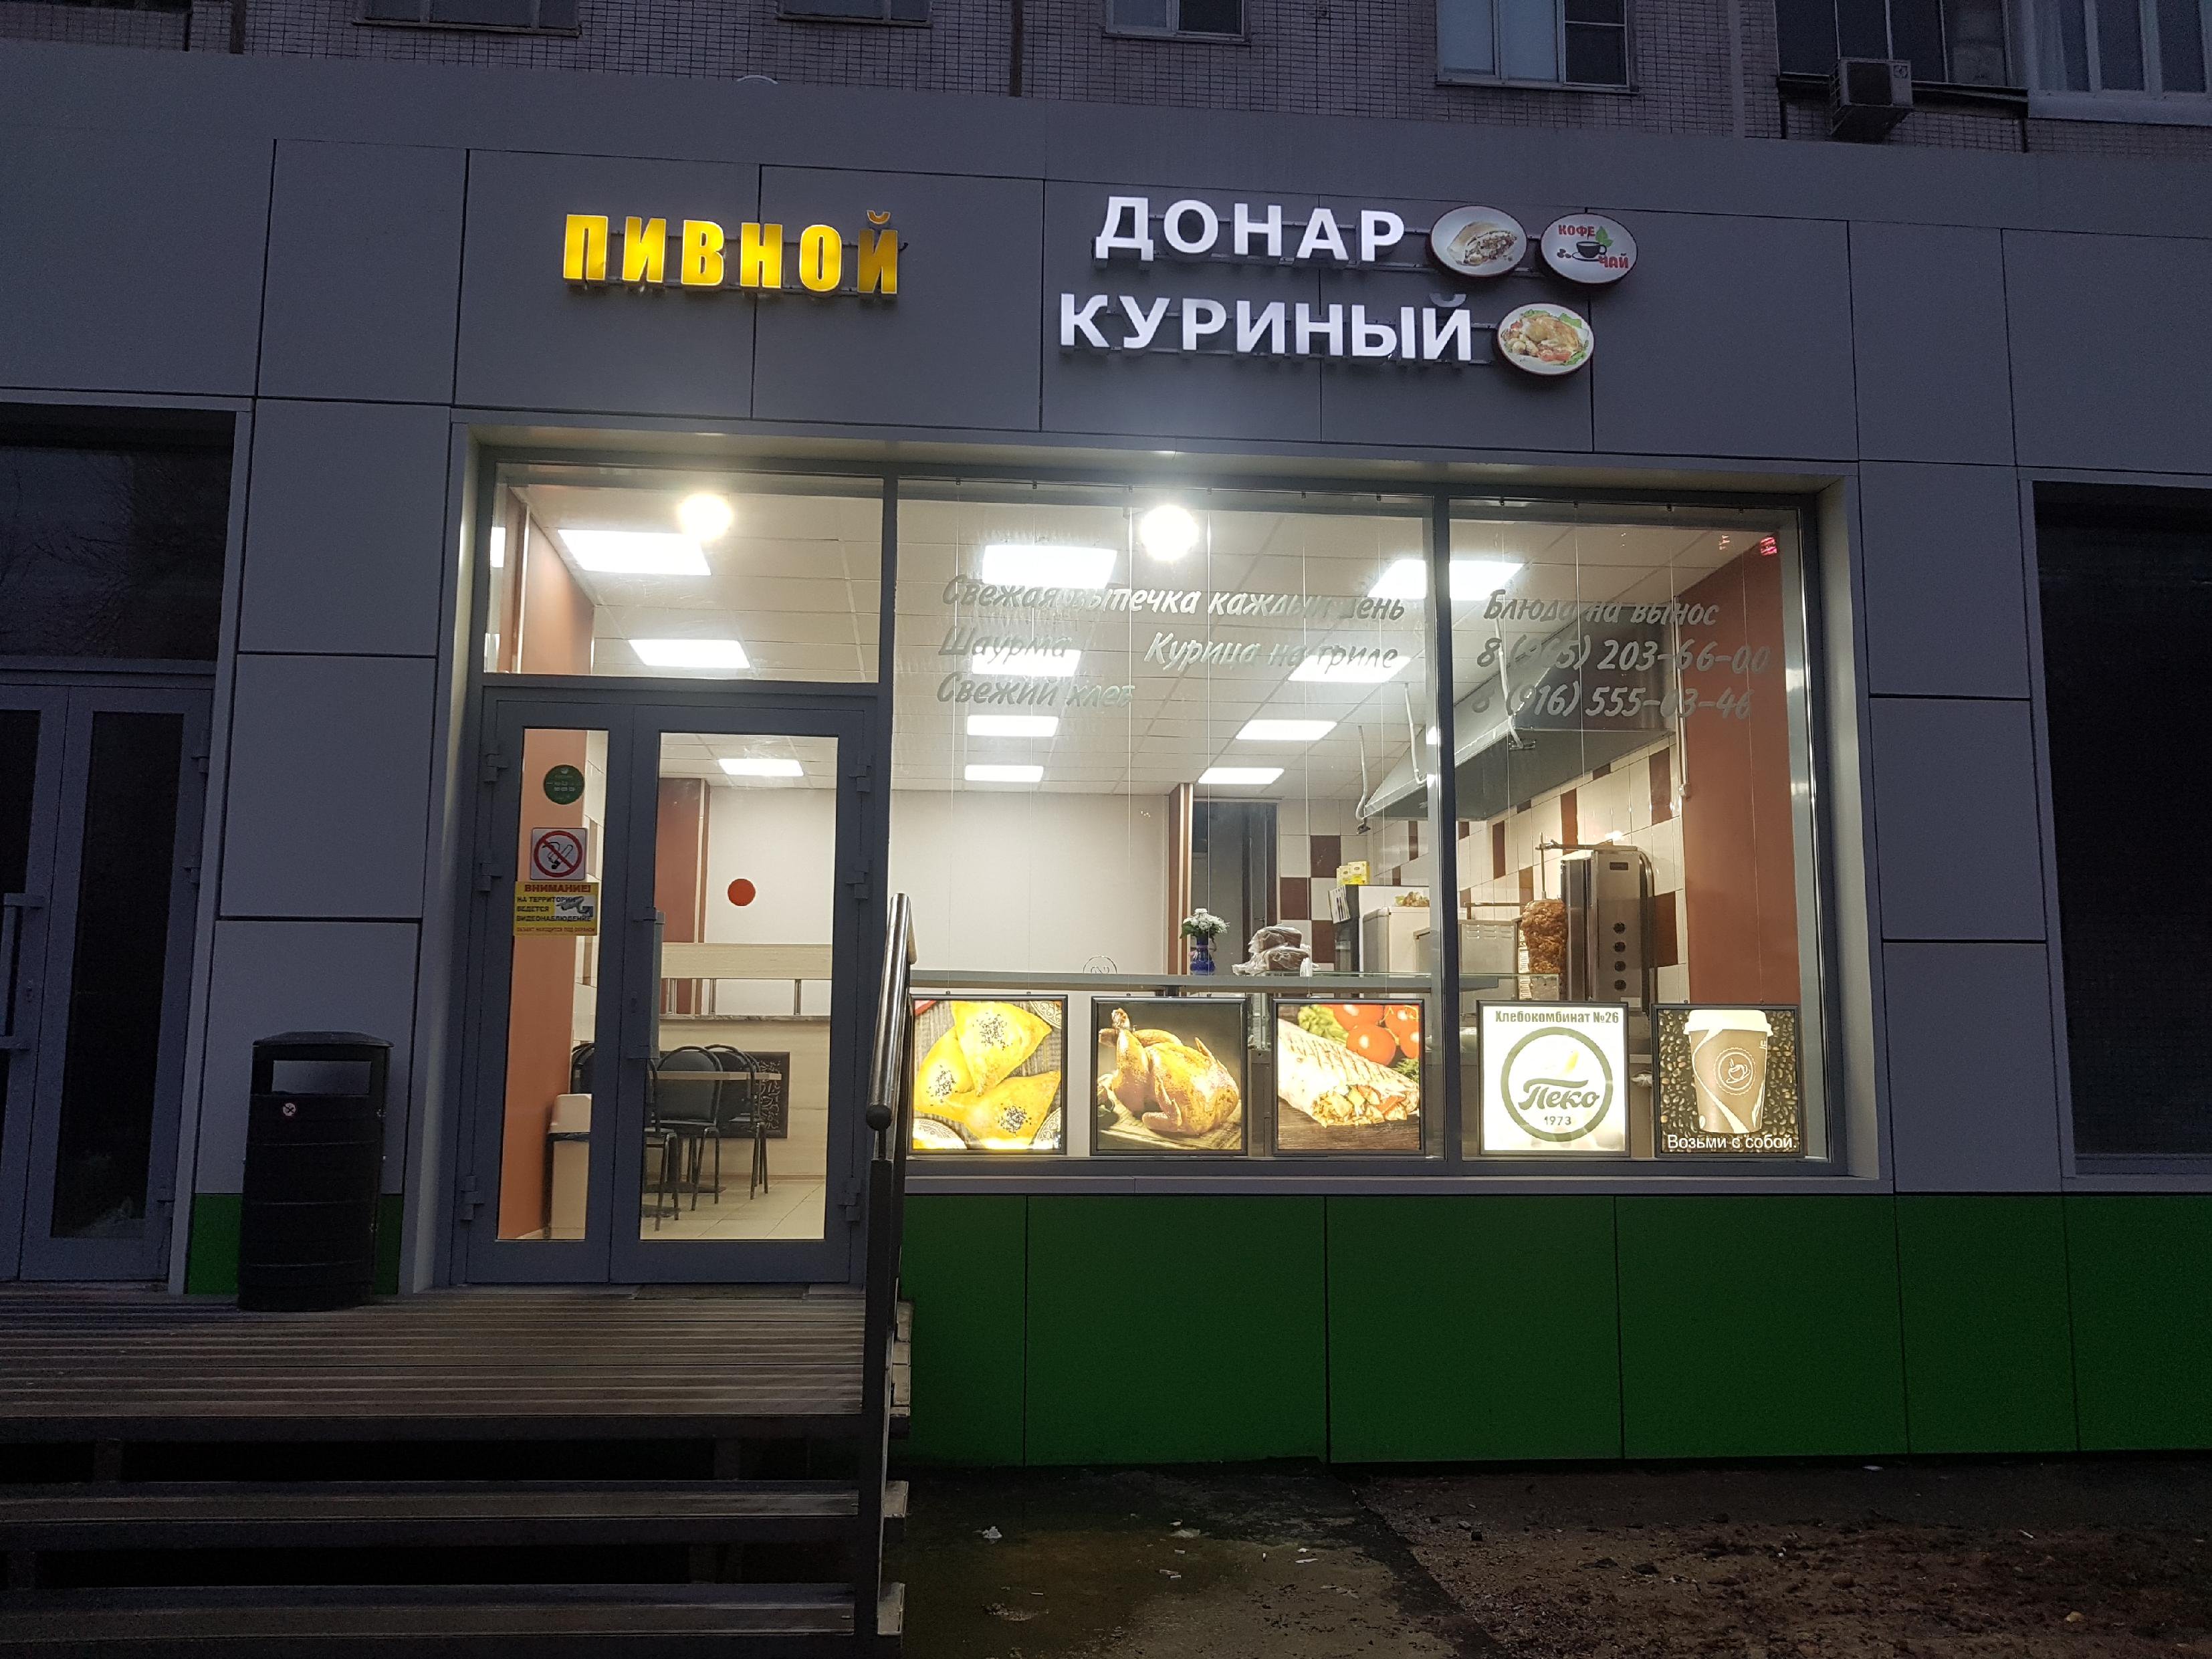 Донар куриный, магазин быстрого питания, Мурановская улица, 12, 1 этаж